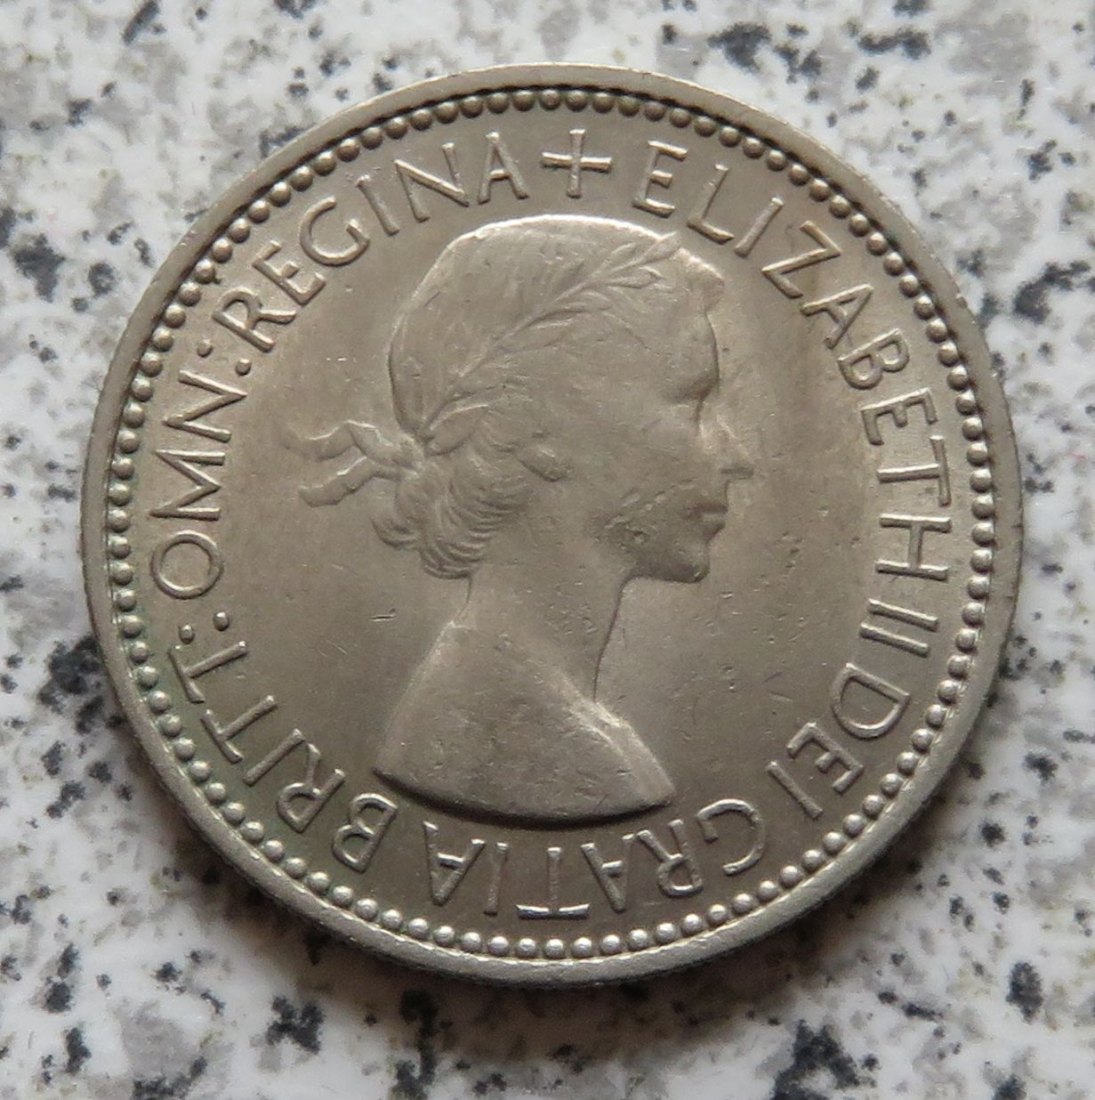  Großbritannien 1 Shilling 1953, Schottisch, Erhaltung   